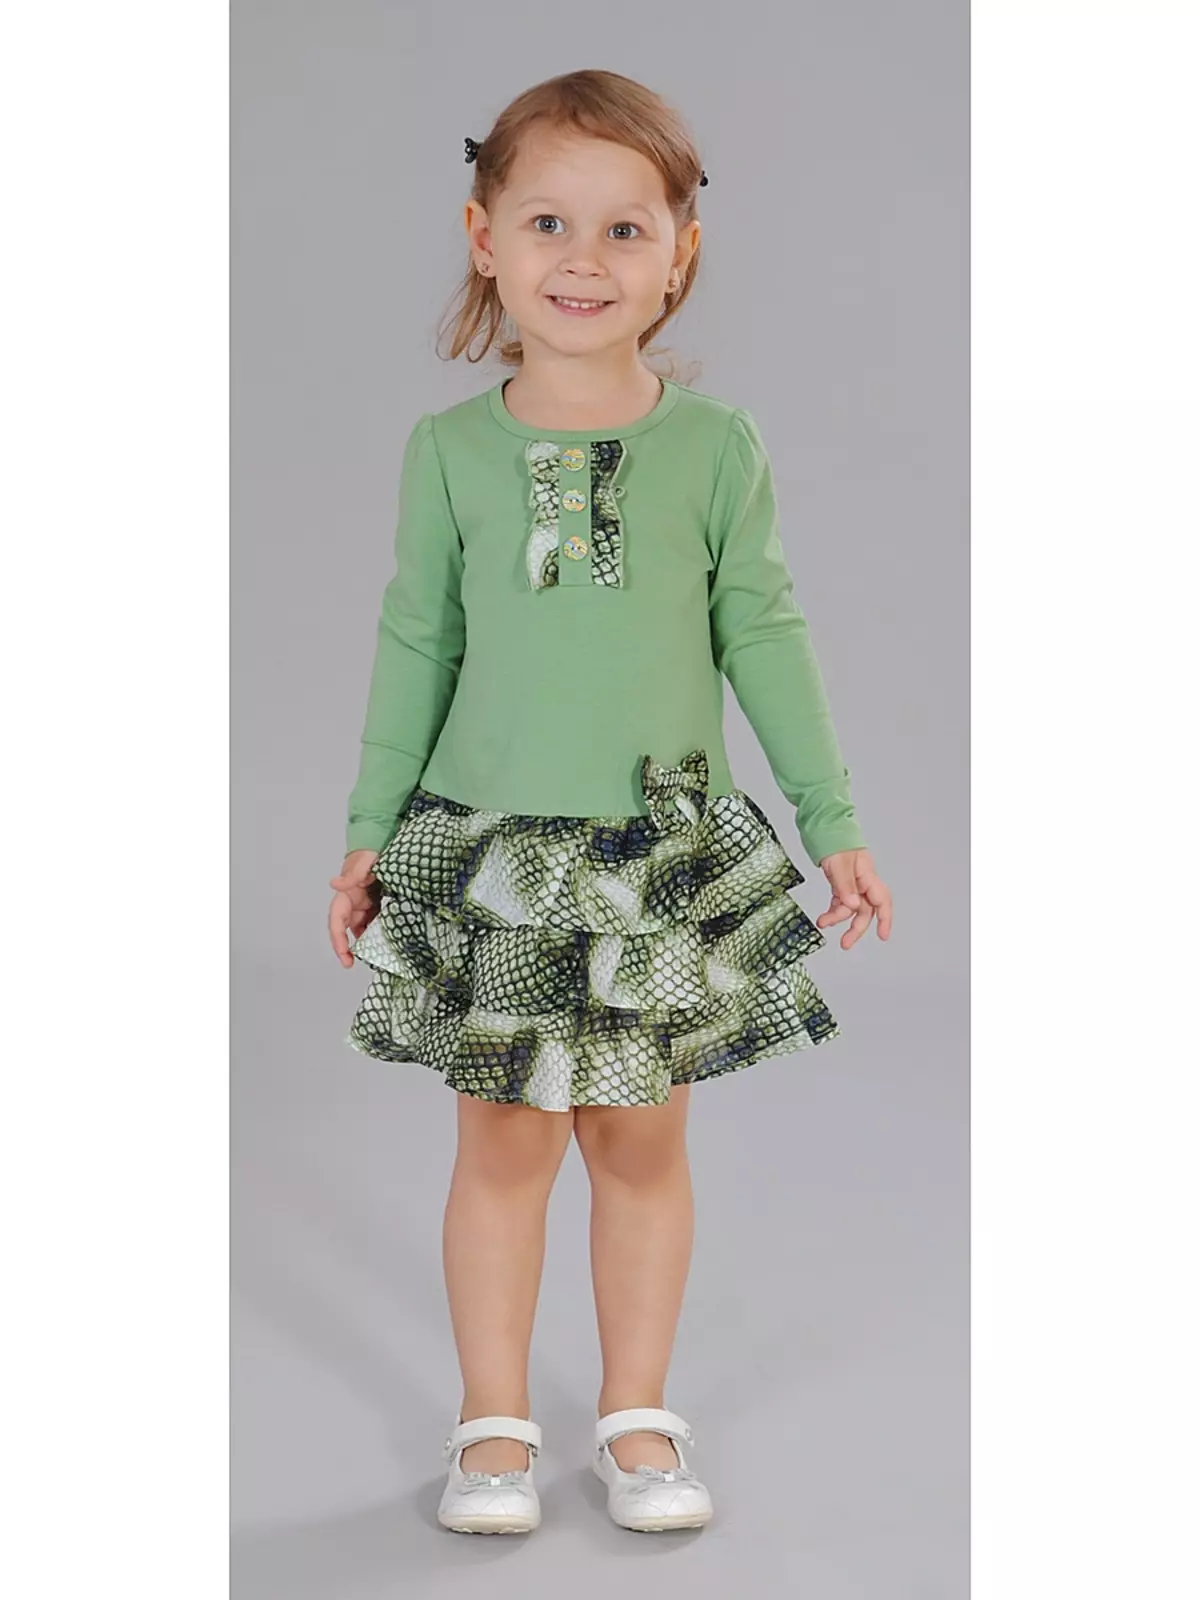 Cutie Susie (52 foto): uniforme scolastica, abiti, costumi e altri indumenti per bambini per ragazze 7 anni, recensioni di prodotti 3792_25